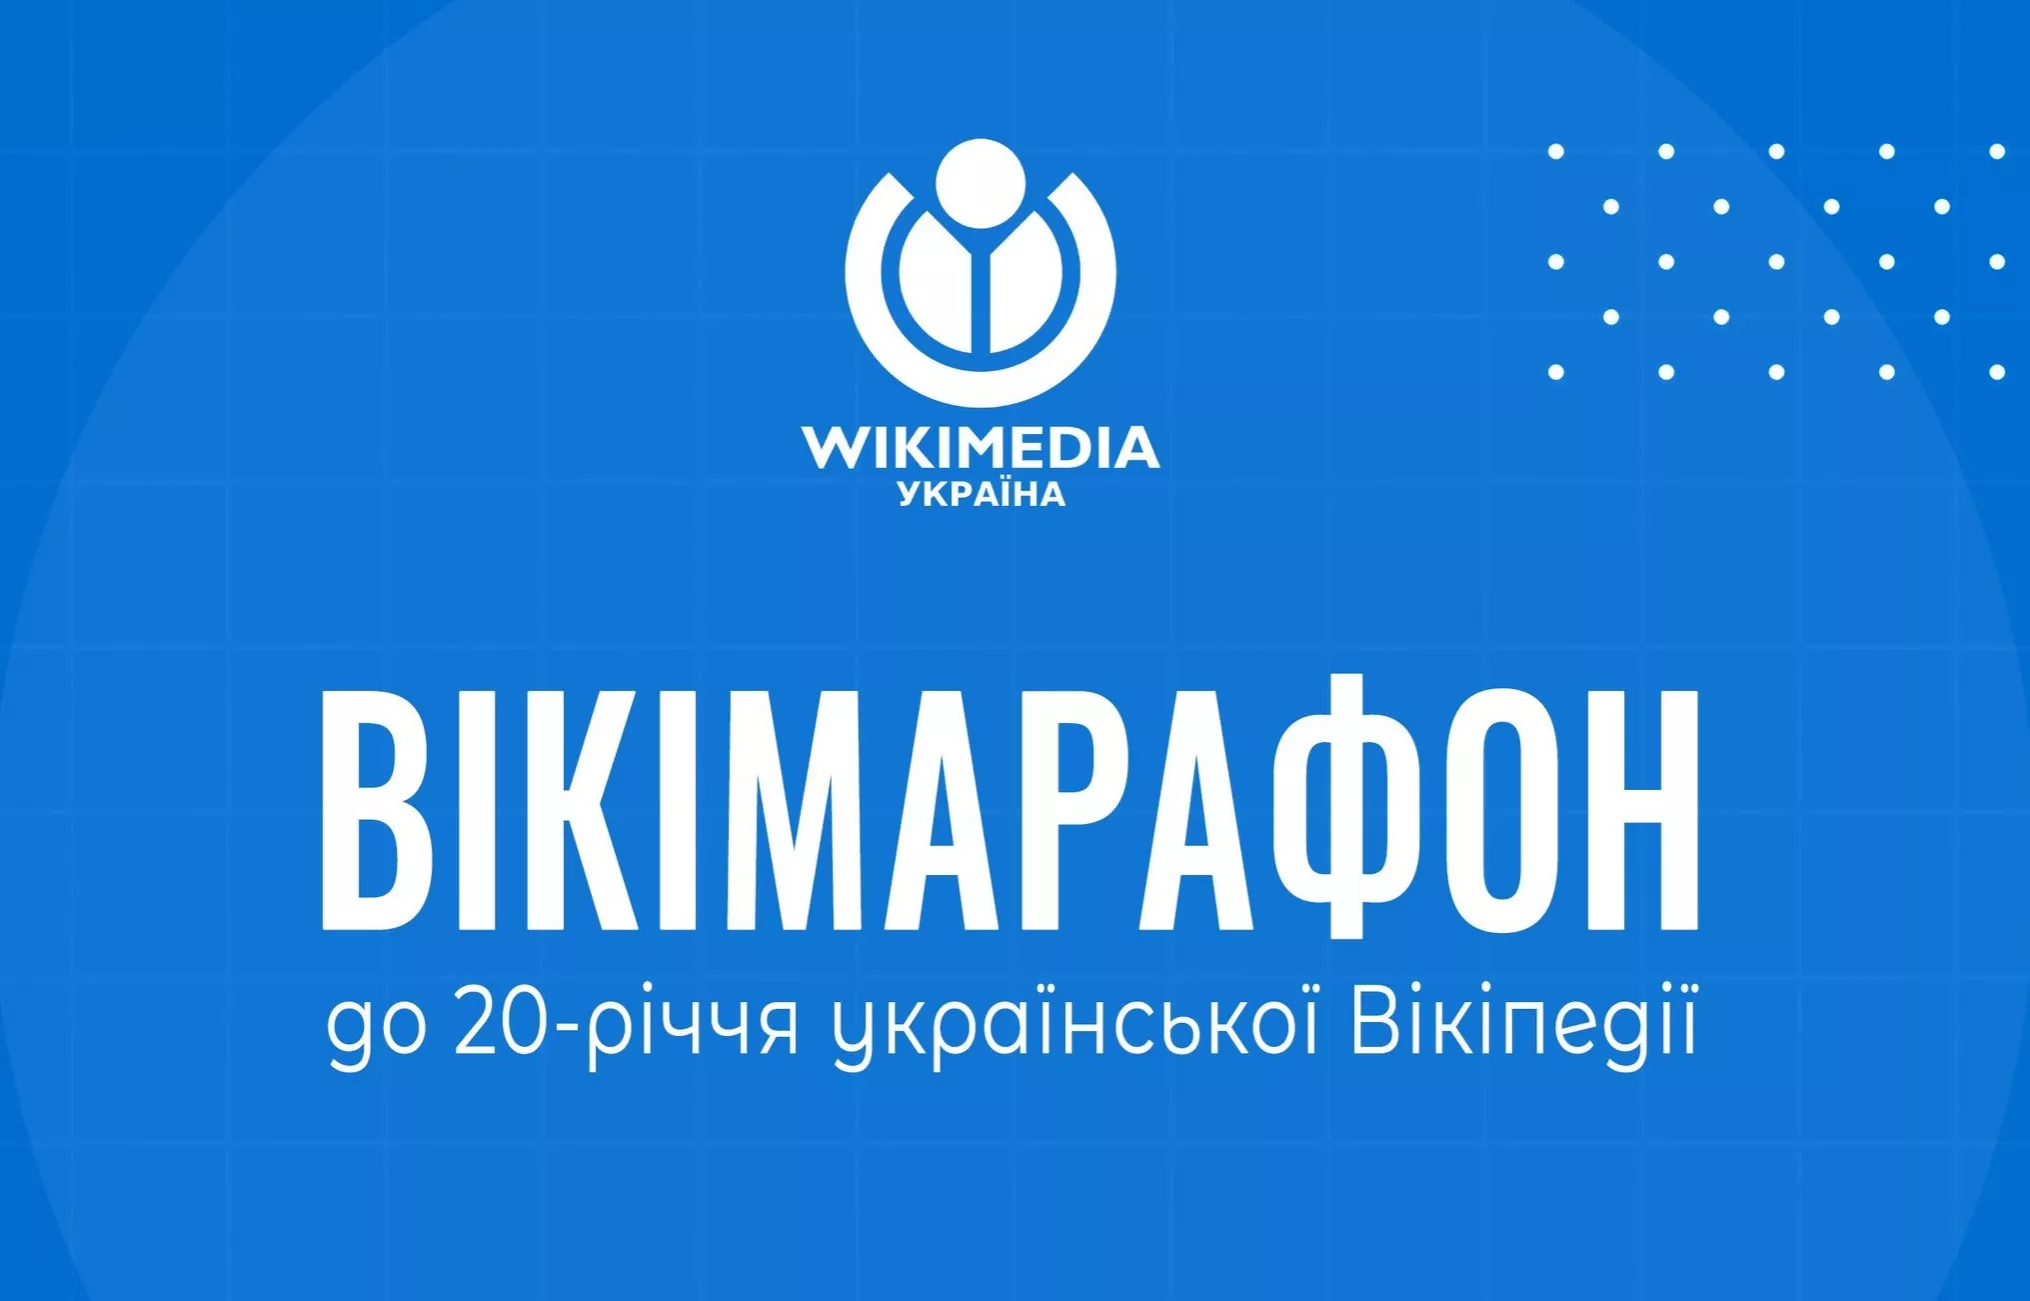 Українська "Вікіпедія" запускає марафон статей до свого 20-річчя